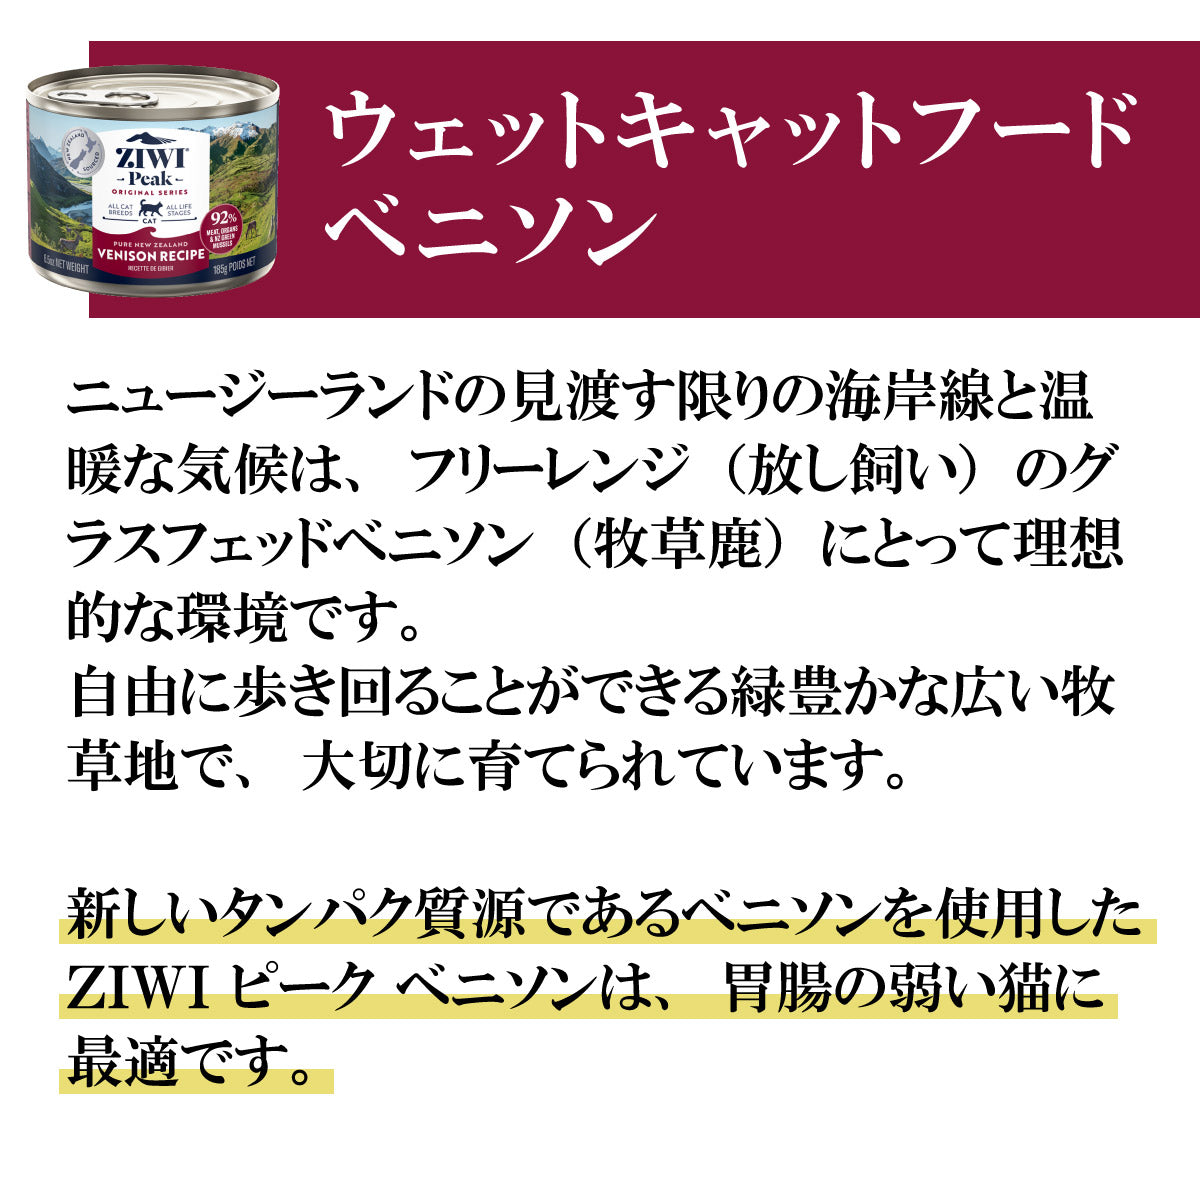 ジウィ ZIWI キャットフード キャット缶 ベニソン 85g×24缶【送料無料】 正規品 無添加 ジウィピーク